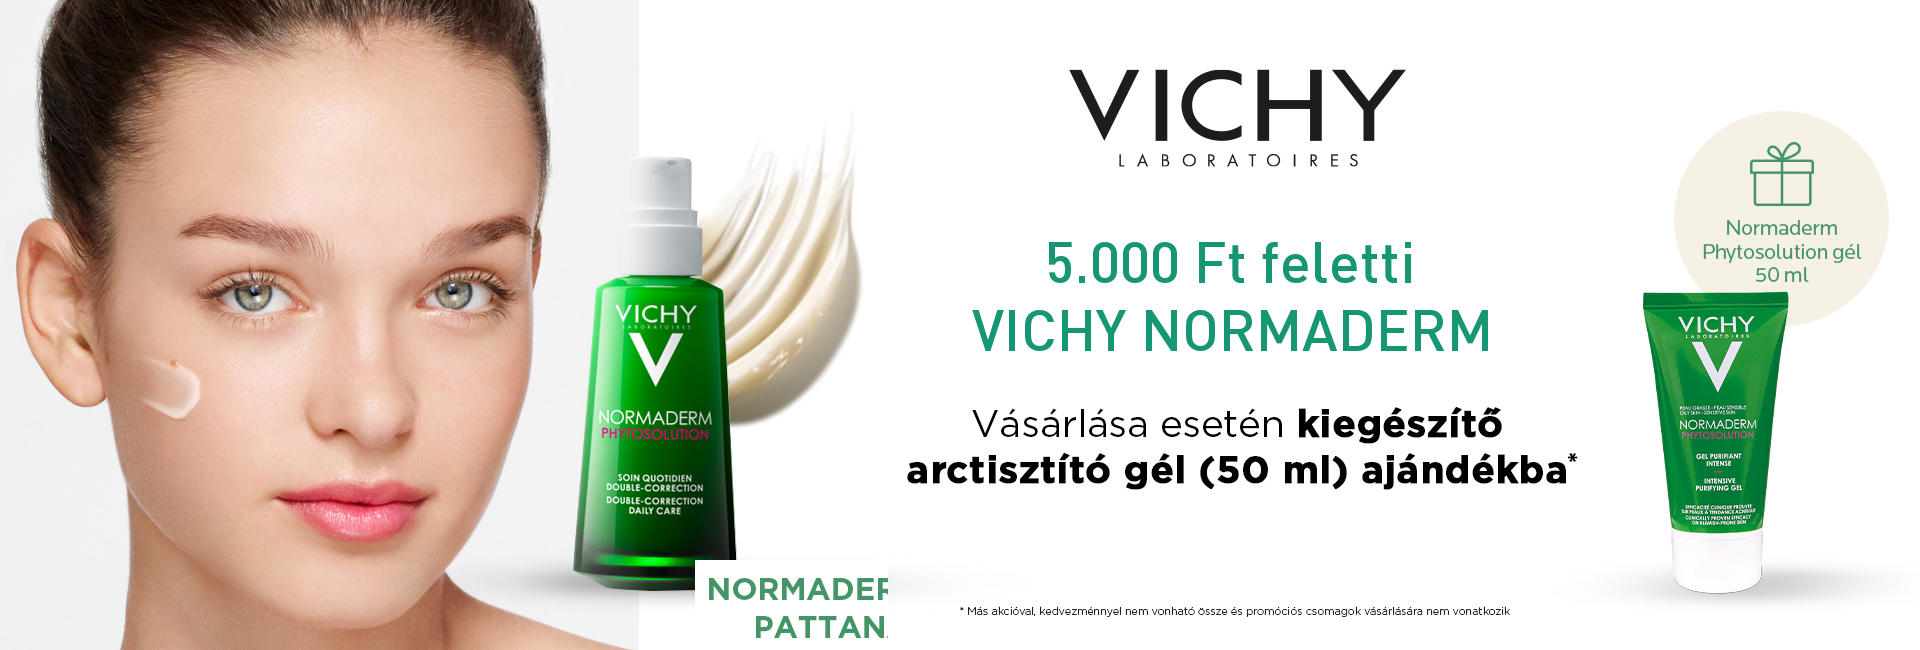 2020. március 21-28. között minden 5.000 Ft feletti Vichy Normaderm megrendelés mellé Vichy Normaderm Phytosolution intenzív tisztító gél 50ml-t adunk ajándékba 1.500 Ft értékben! 